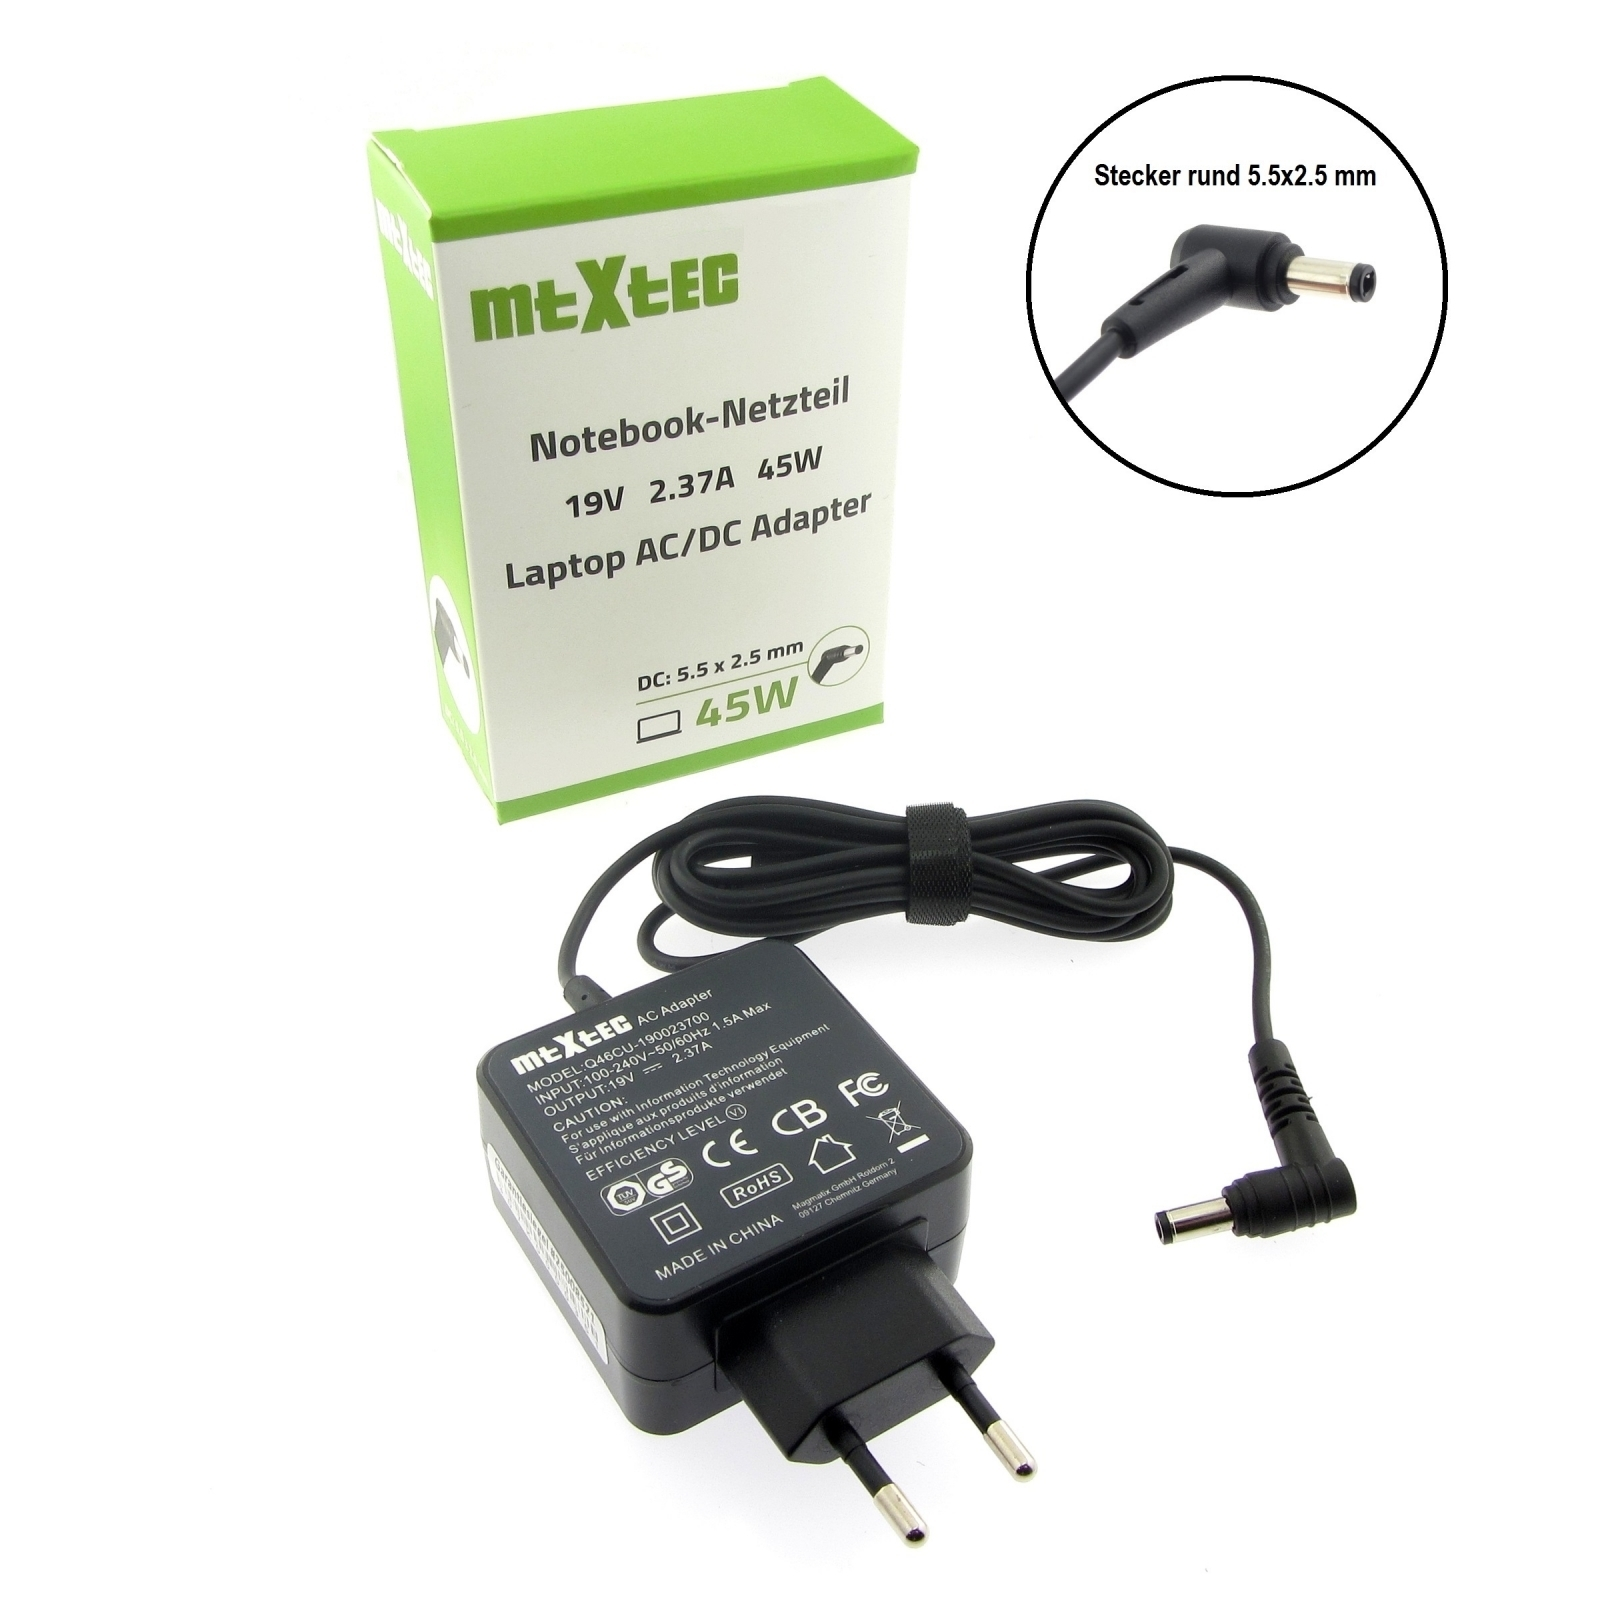 MTXTEC Netzteil, 2.37A Watt ASUS Stecker für rund F551MA, Notebook-Netzteil 2.5 x 5.5 19V, mm 45